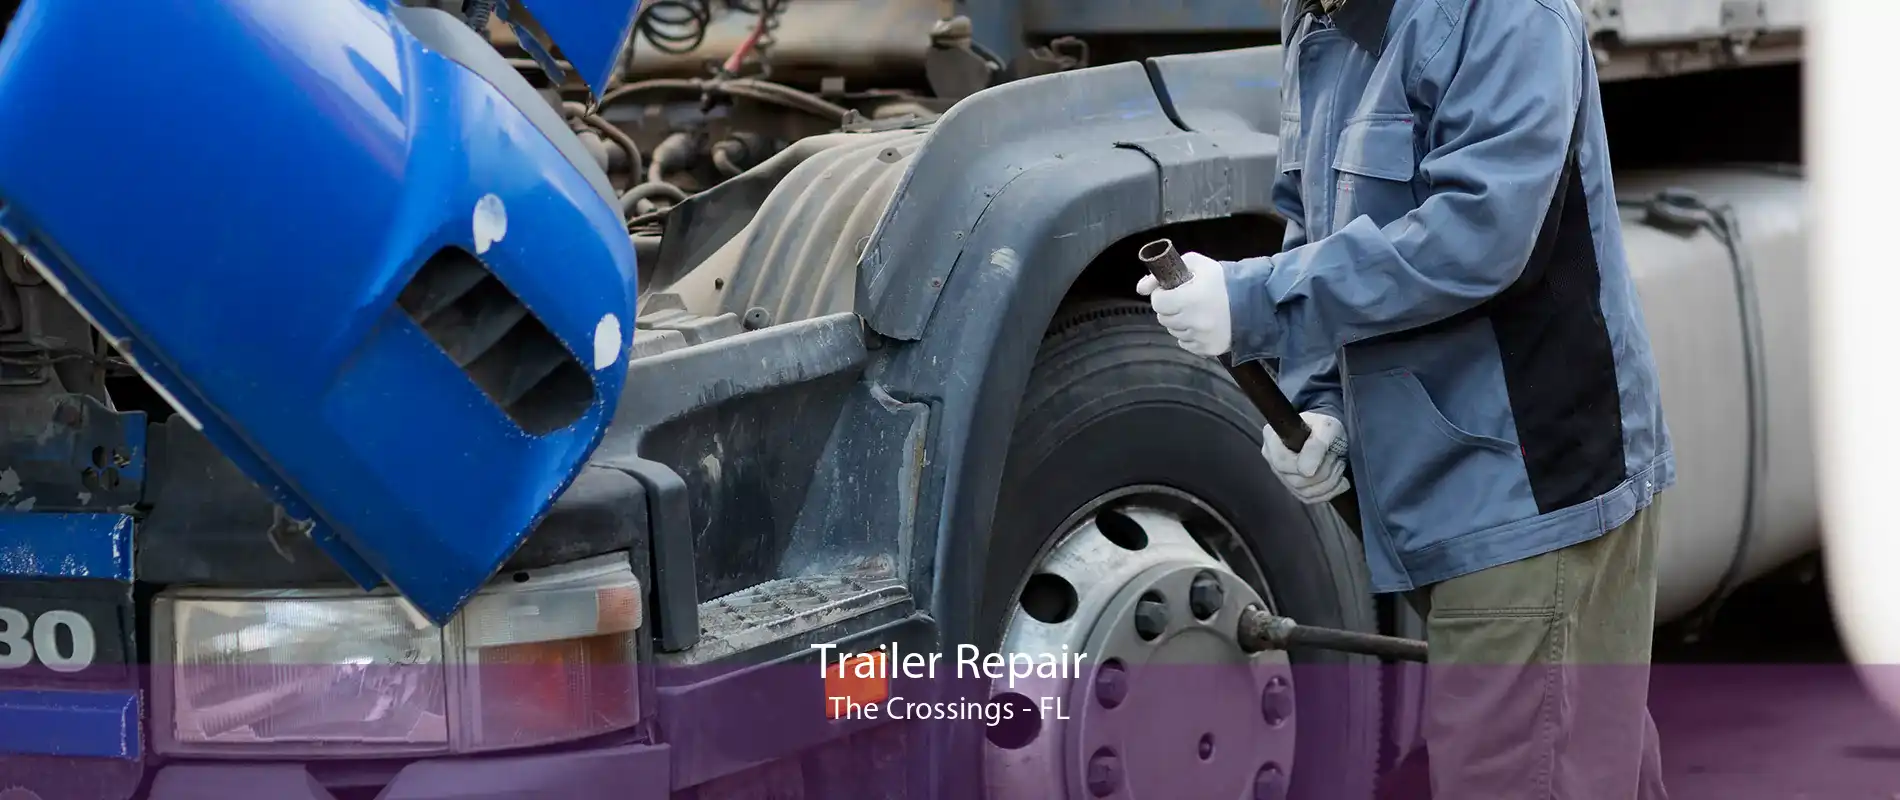 Trailer Repair The Crossings - FL